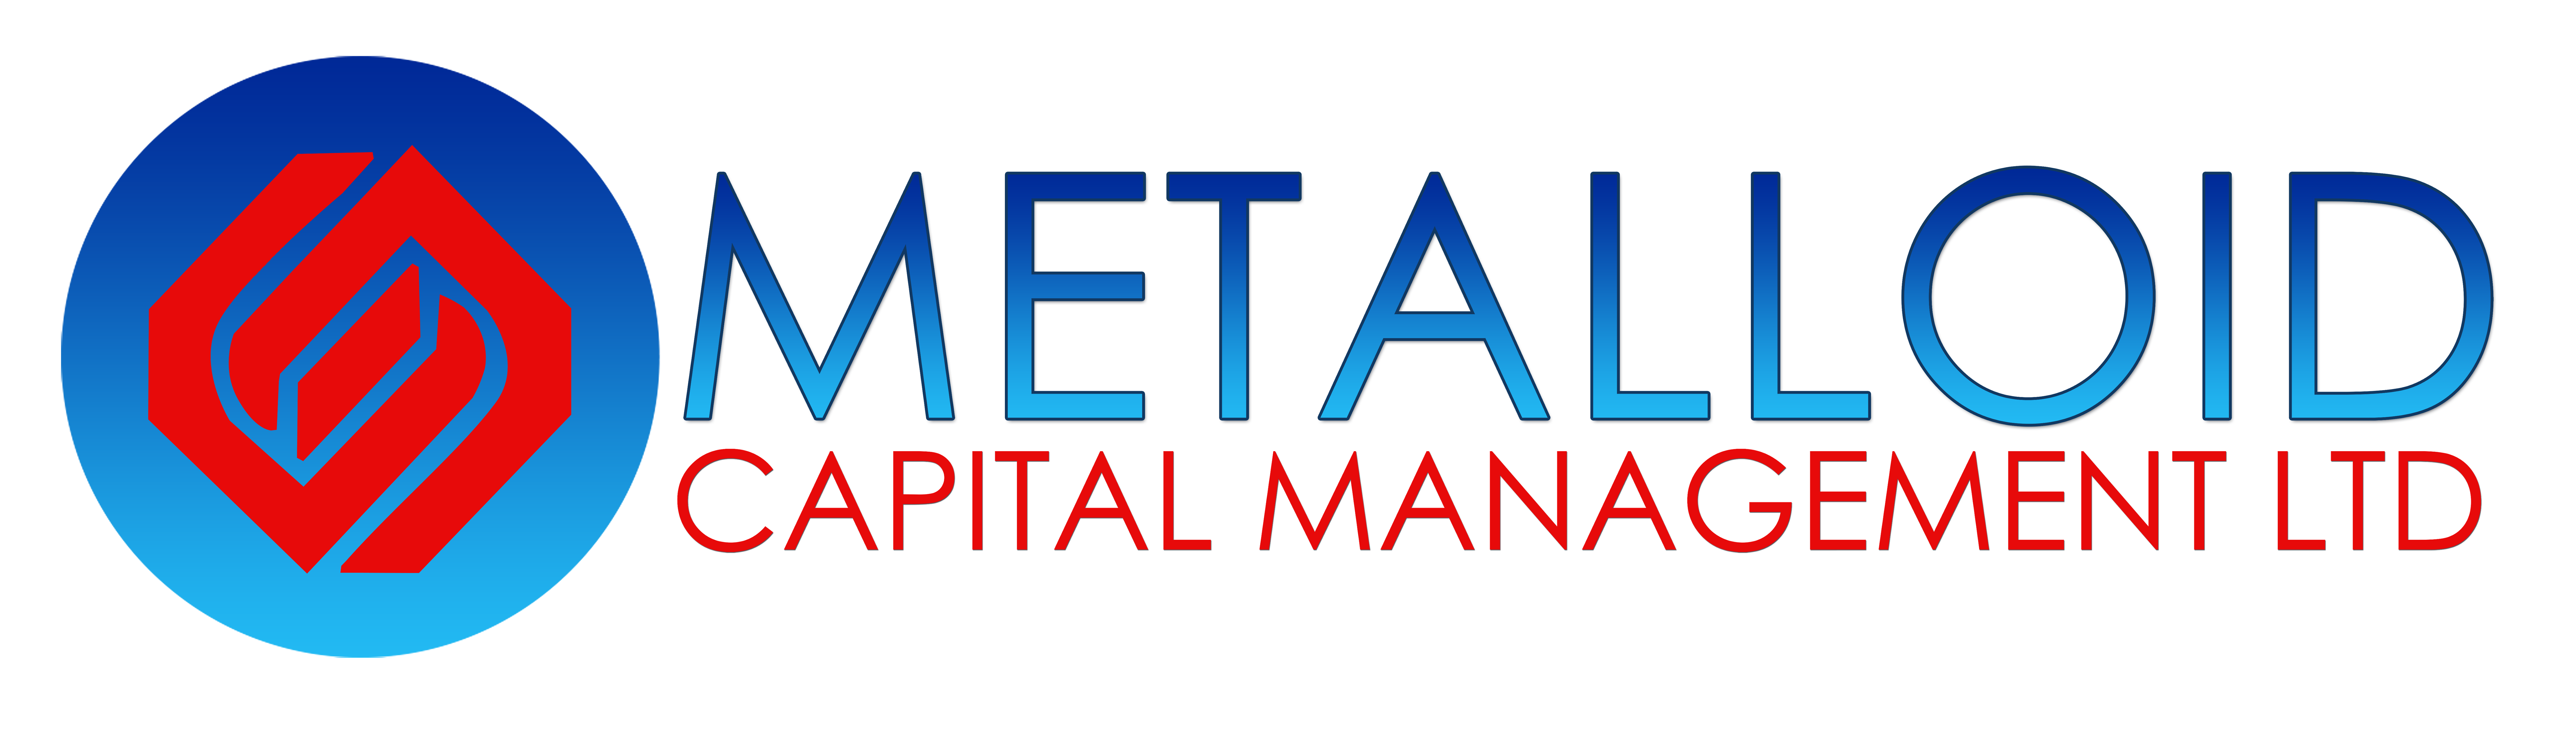 Metalloid Capital Management